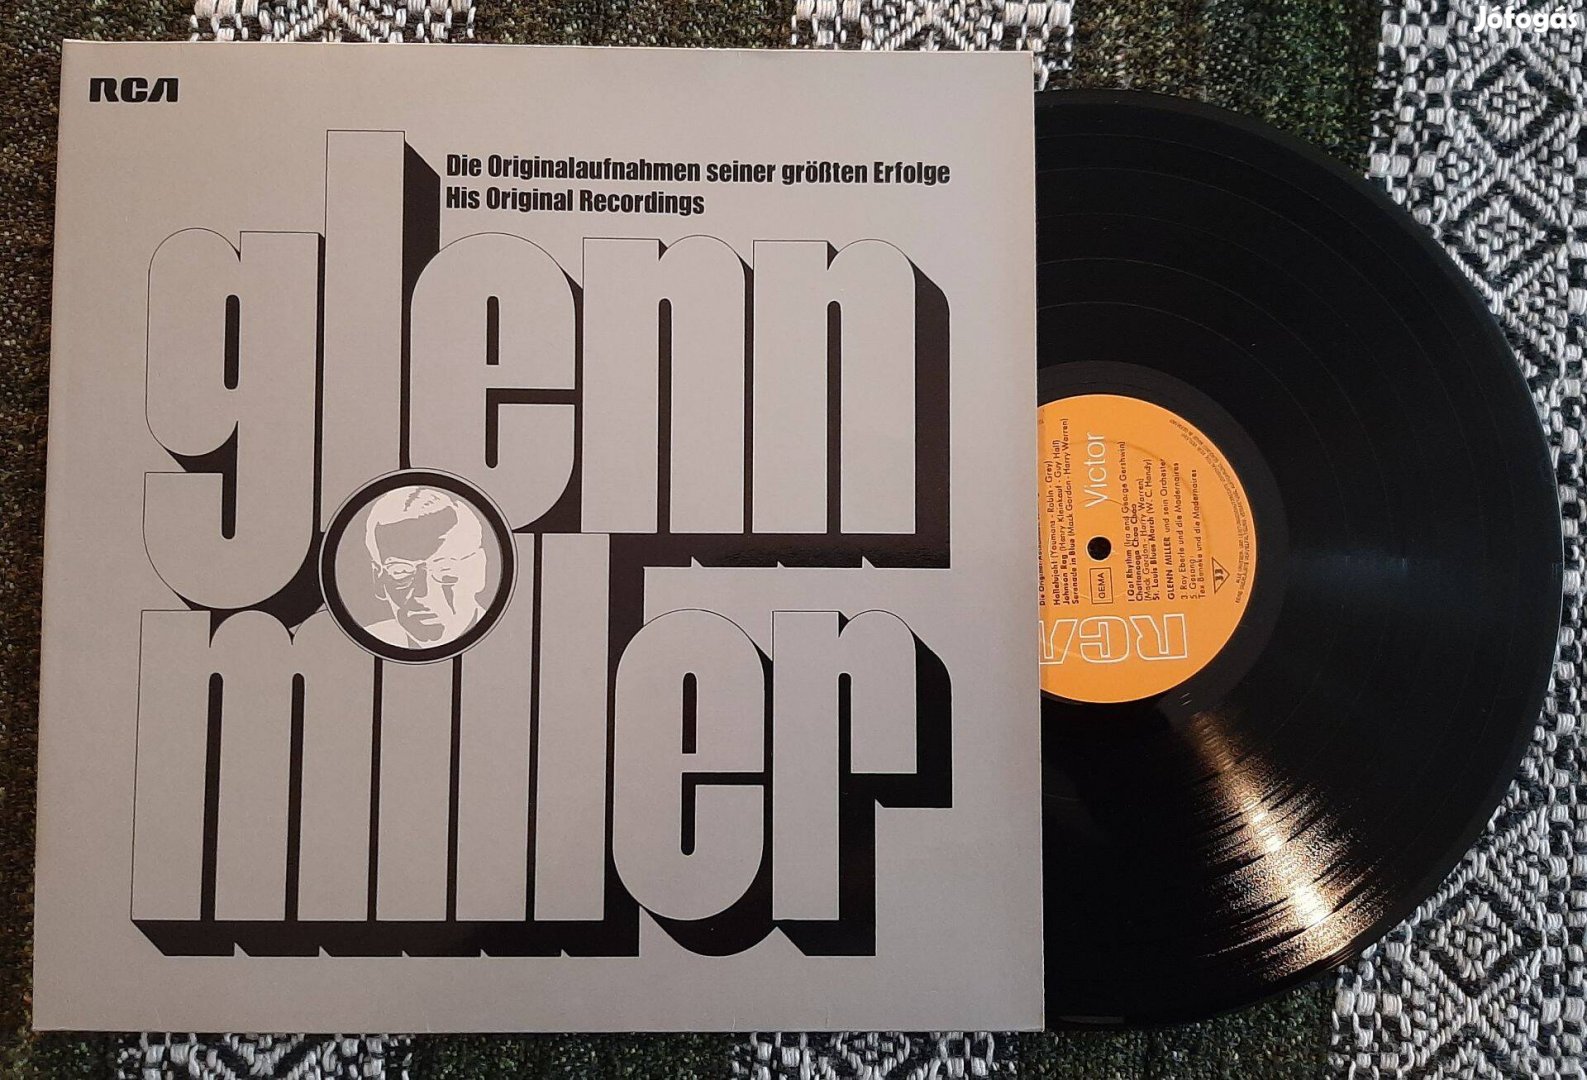 Glenn Miller bakelit lemez